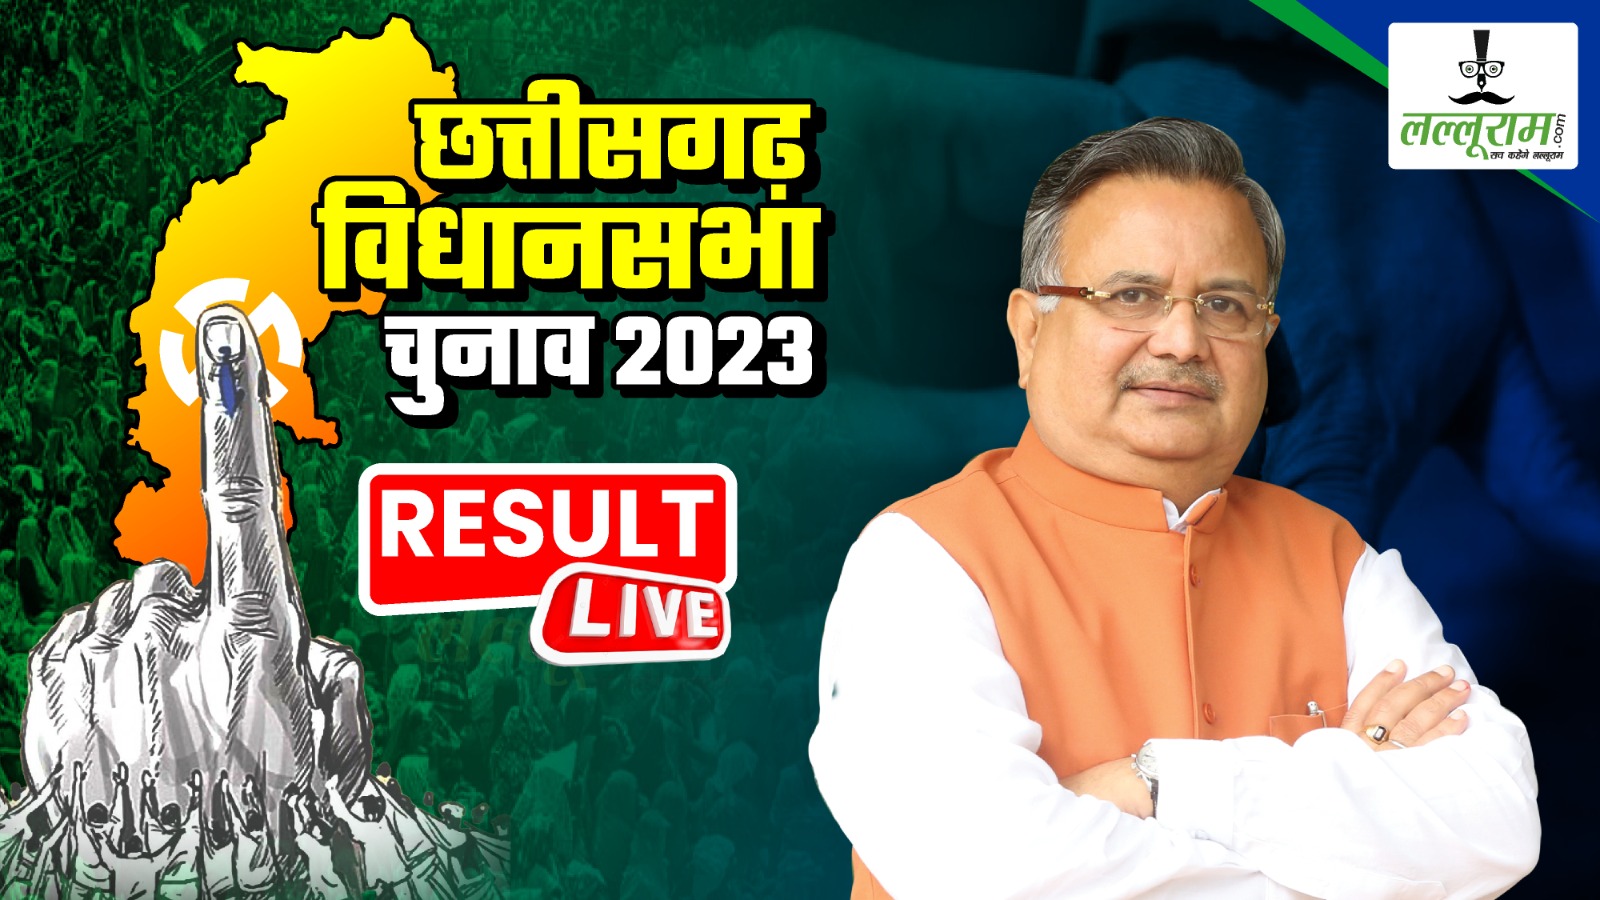 Chhattisgarh Election Results 2023 LIVE Updates: भारतीय जनता पार्टी के ये प्रत्याशी बने कद्दावर नेता! 20 हजार से अधिक लीड की हासिल